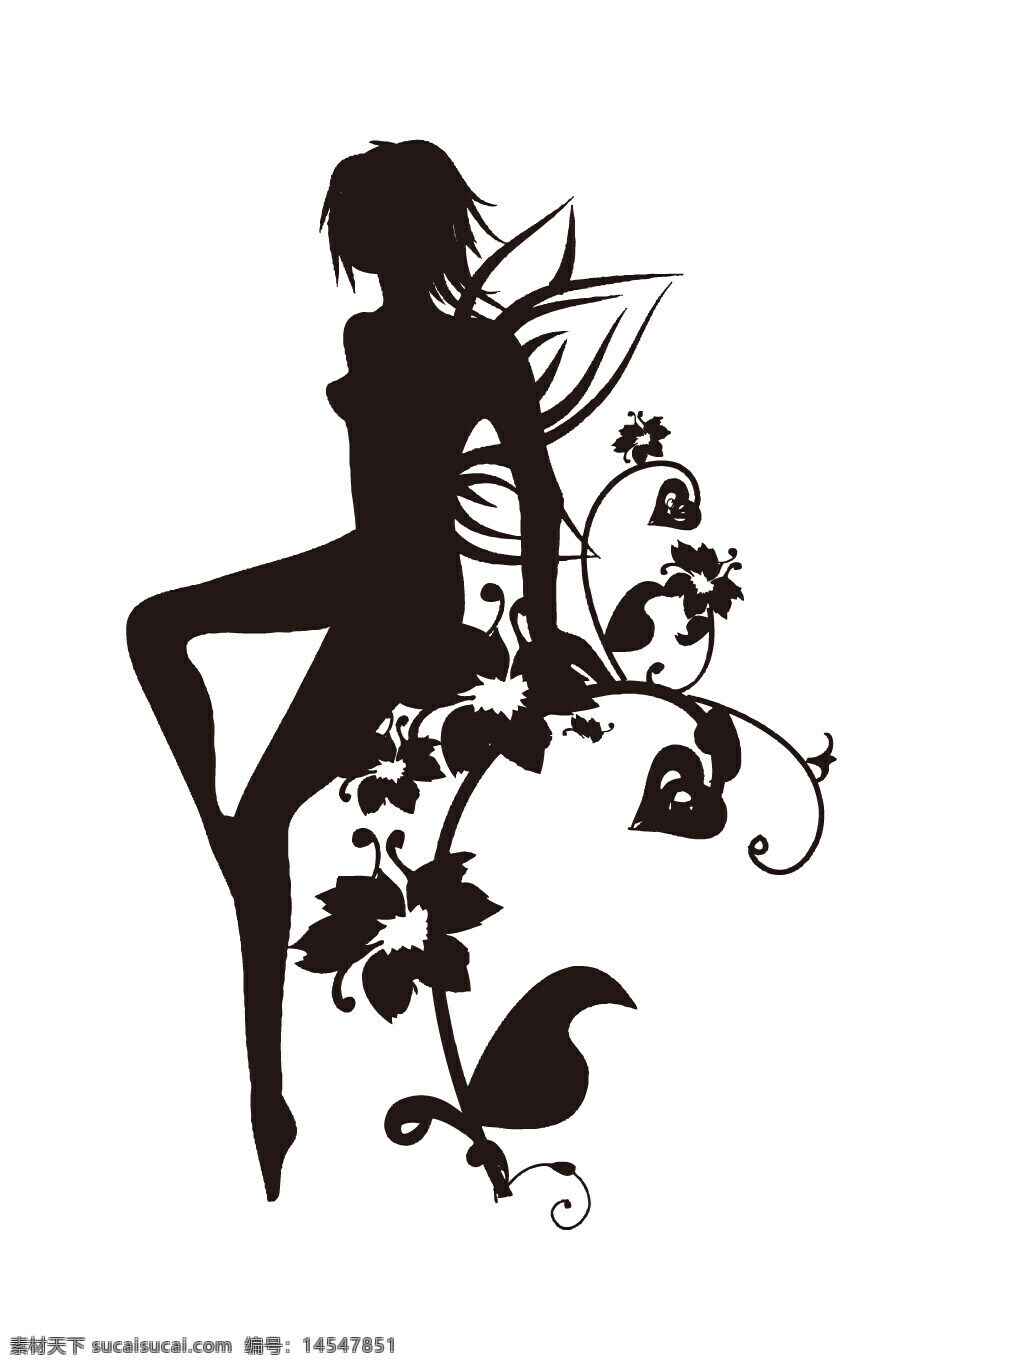 妇女节素材 38 三八 女神节 女性 女人 美女 国际妇女节 3月8日 矢量素材 海报素材 广告素材 广告装饰